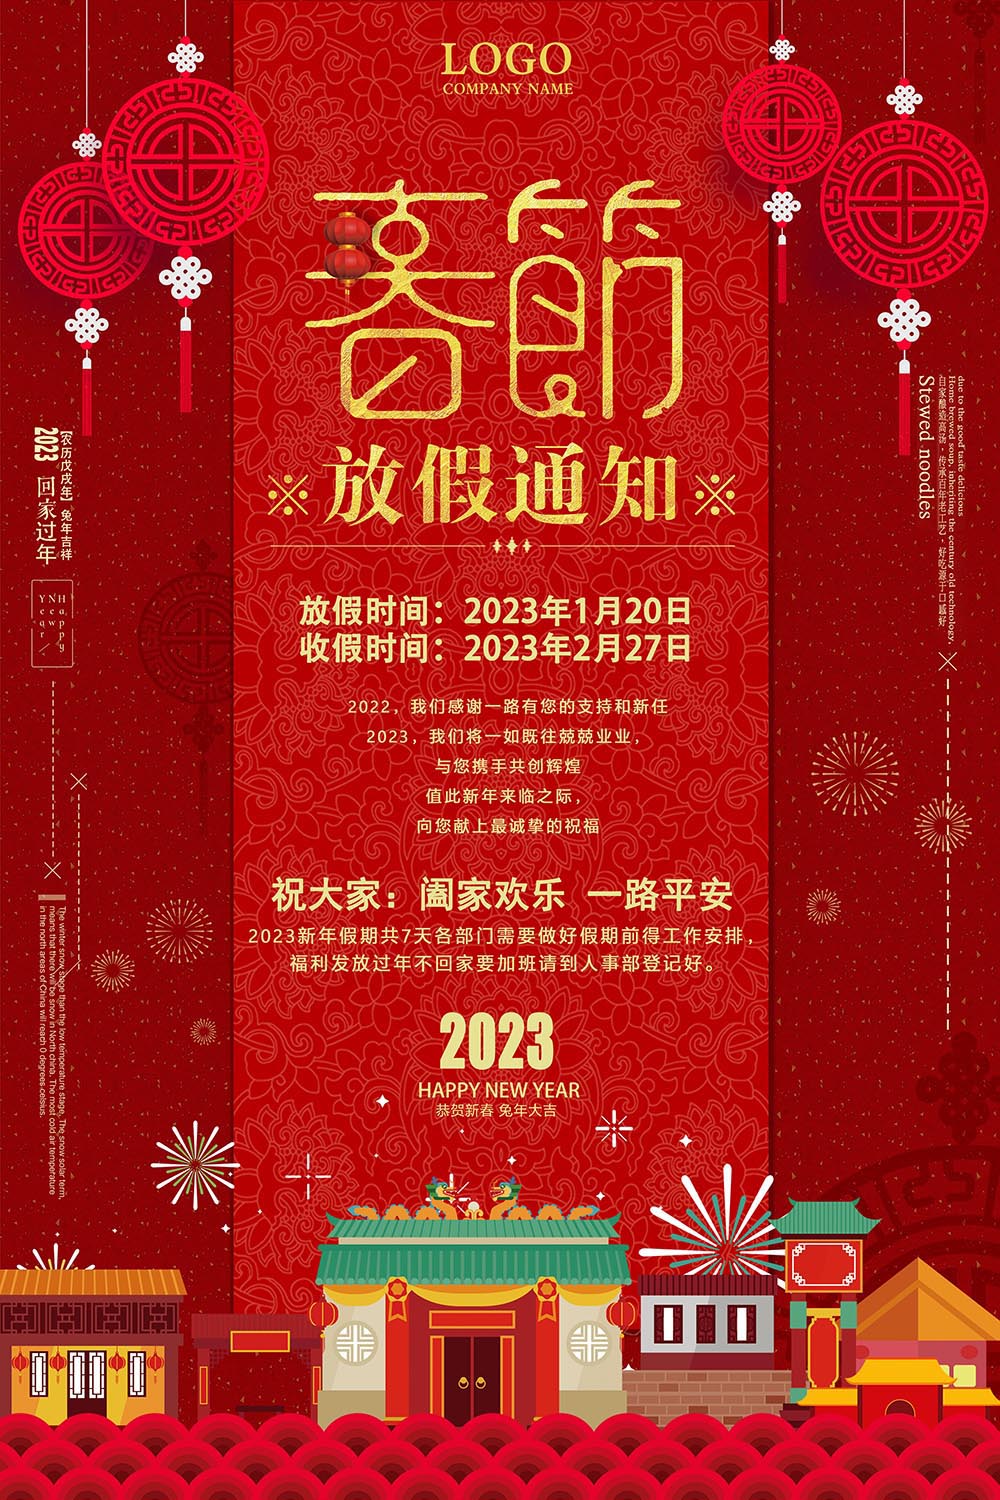 红色大气新年春节放假安排通知海报